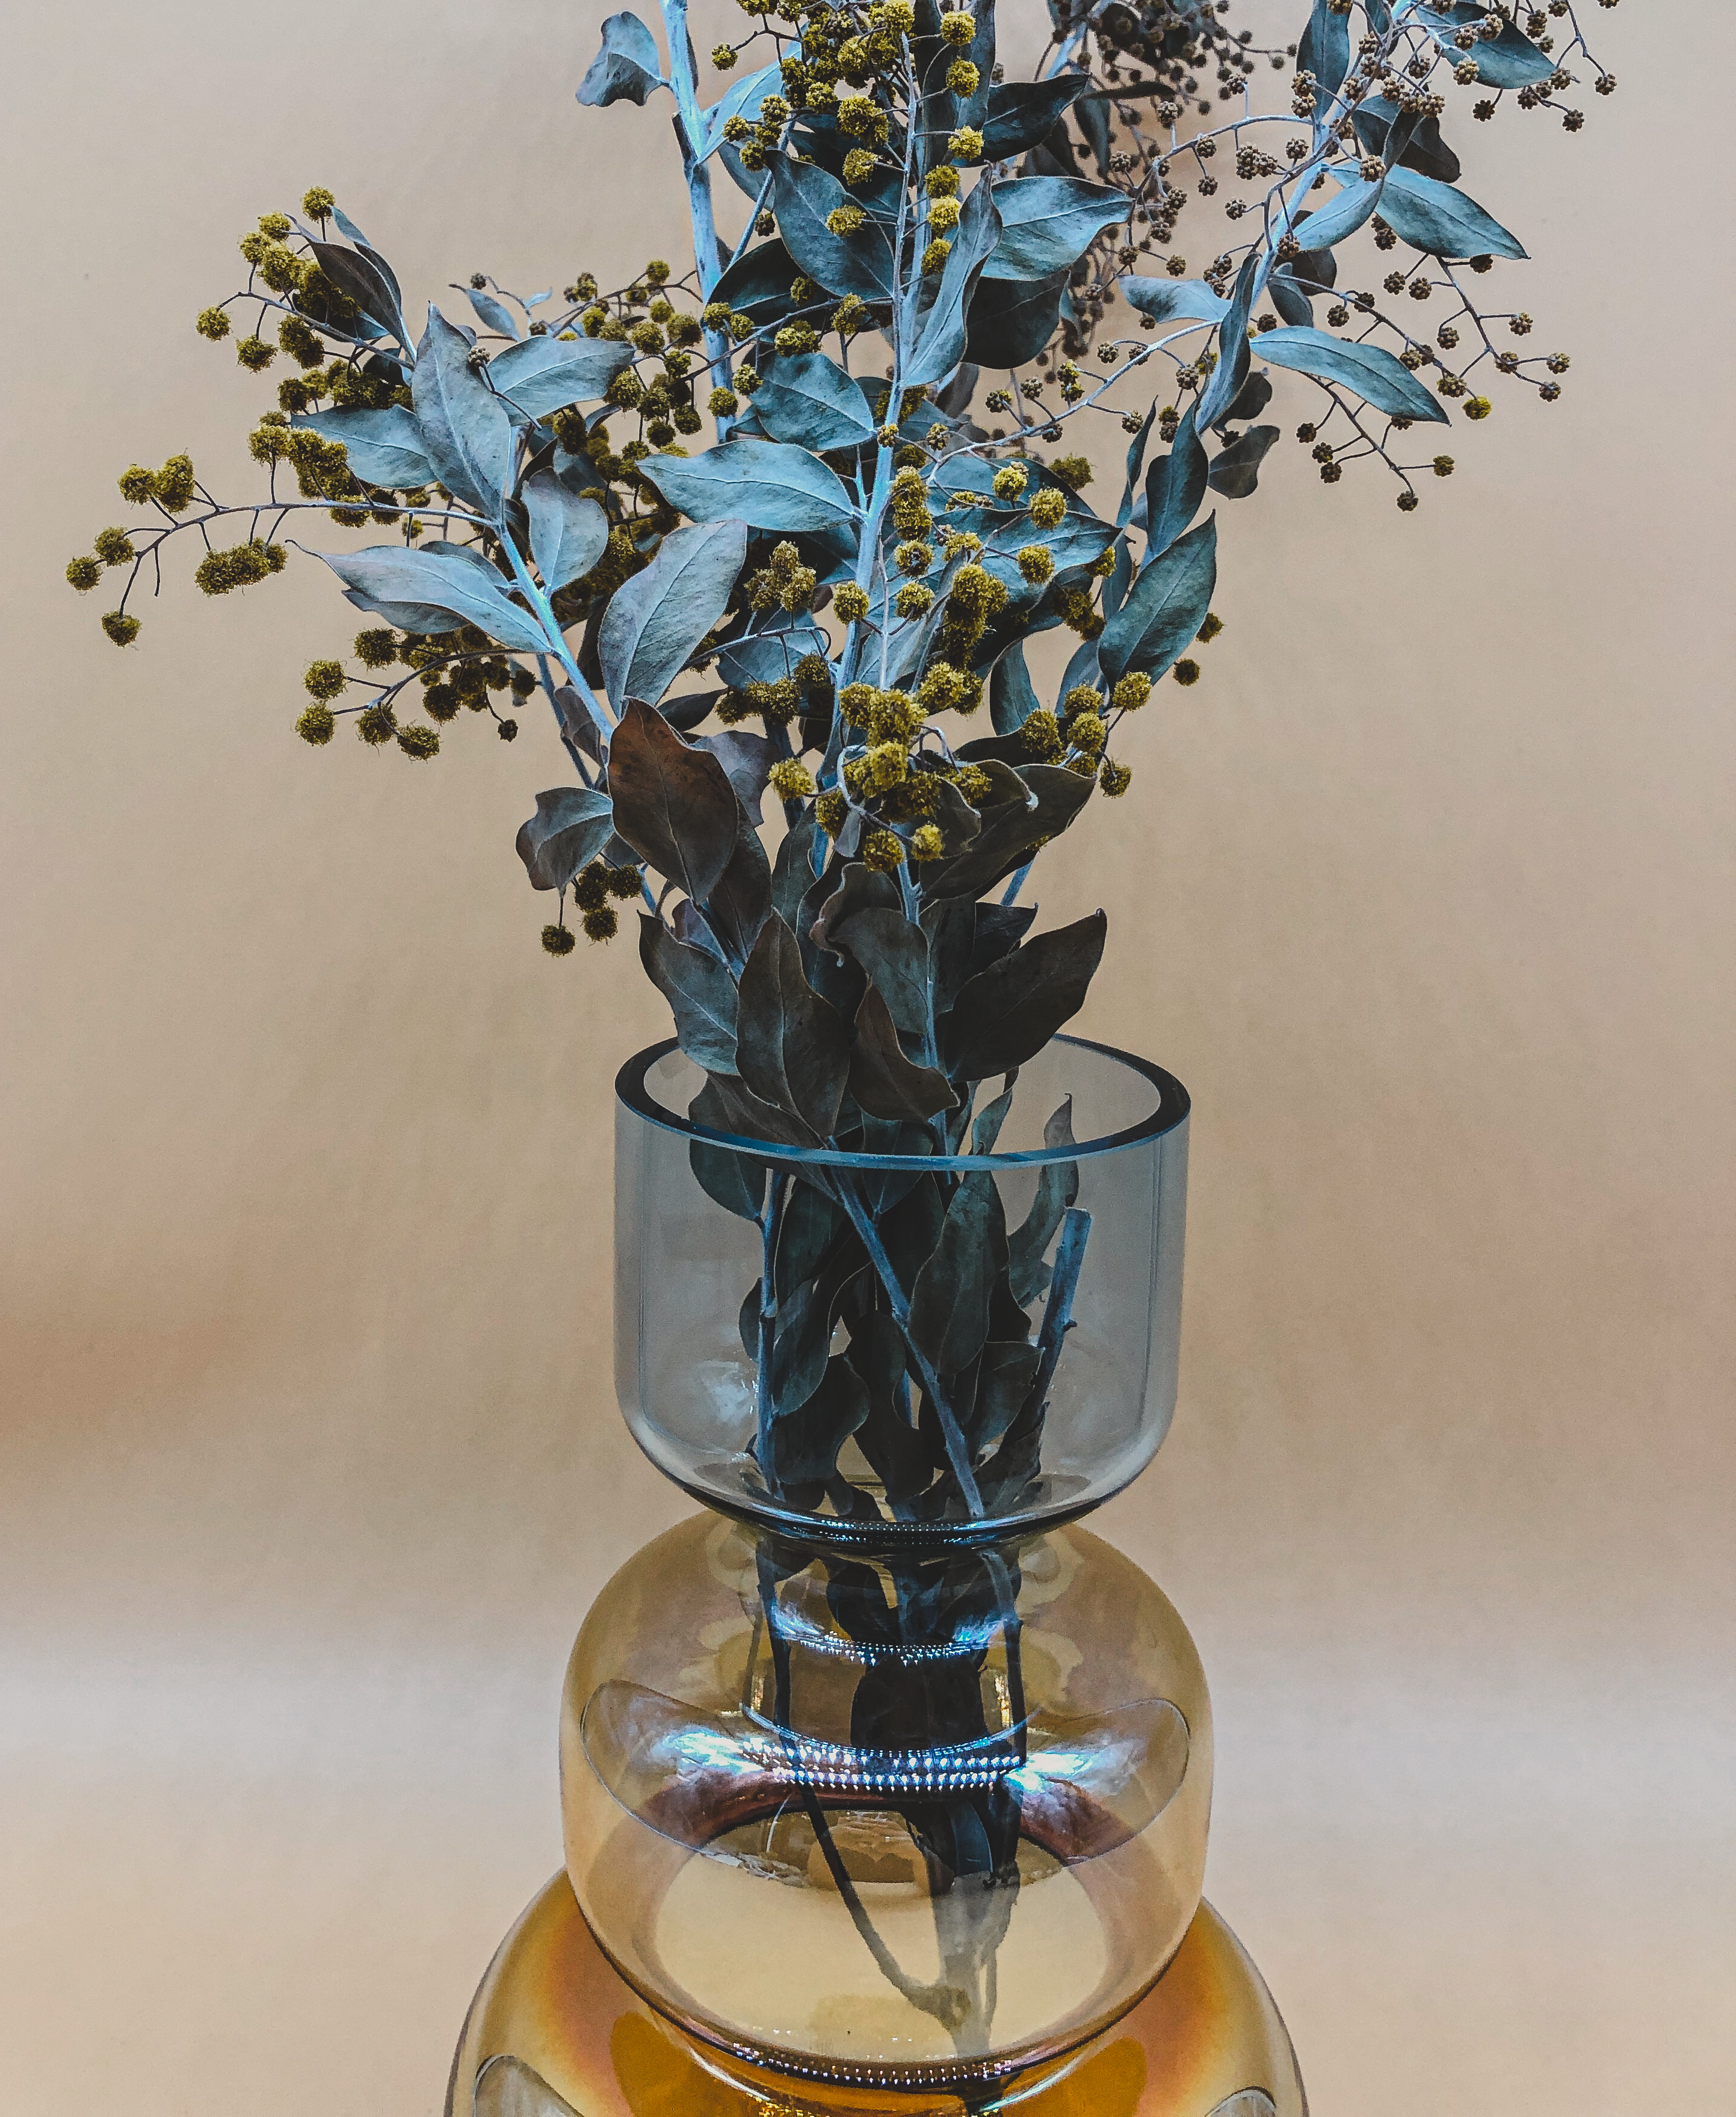 Holographic Vase by PROSE Botanical